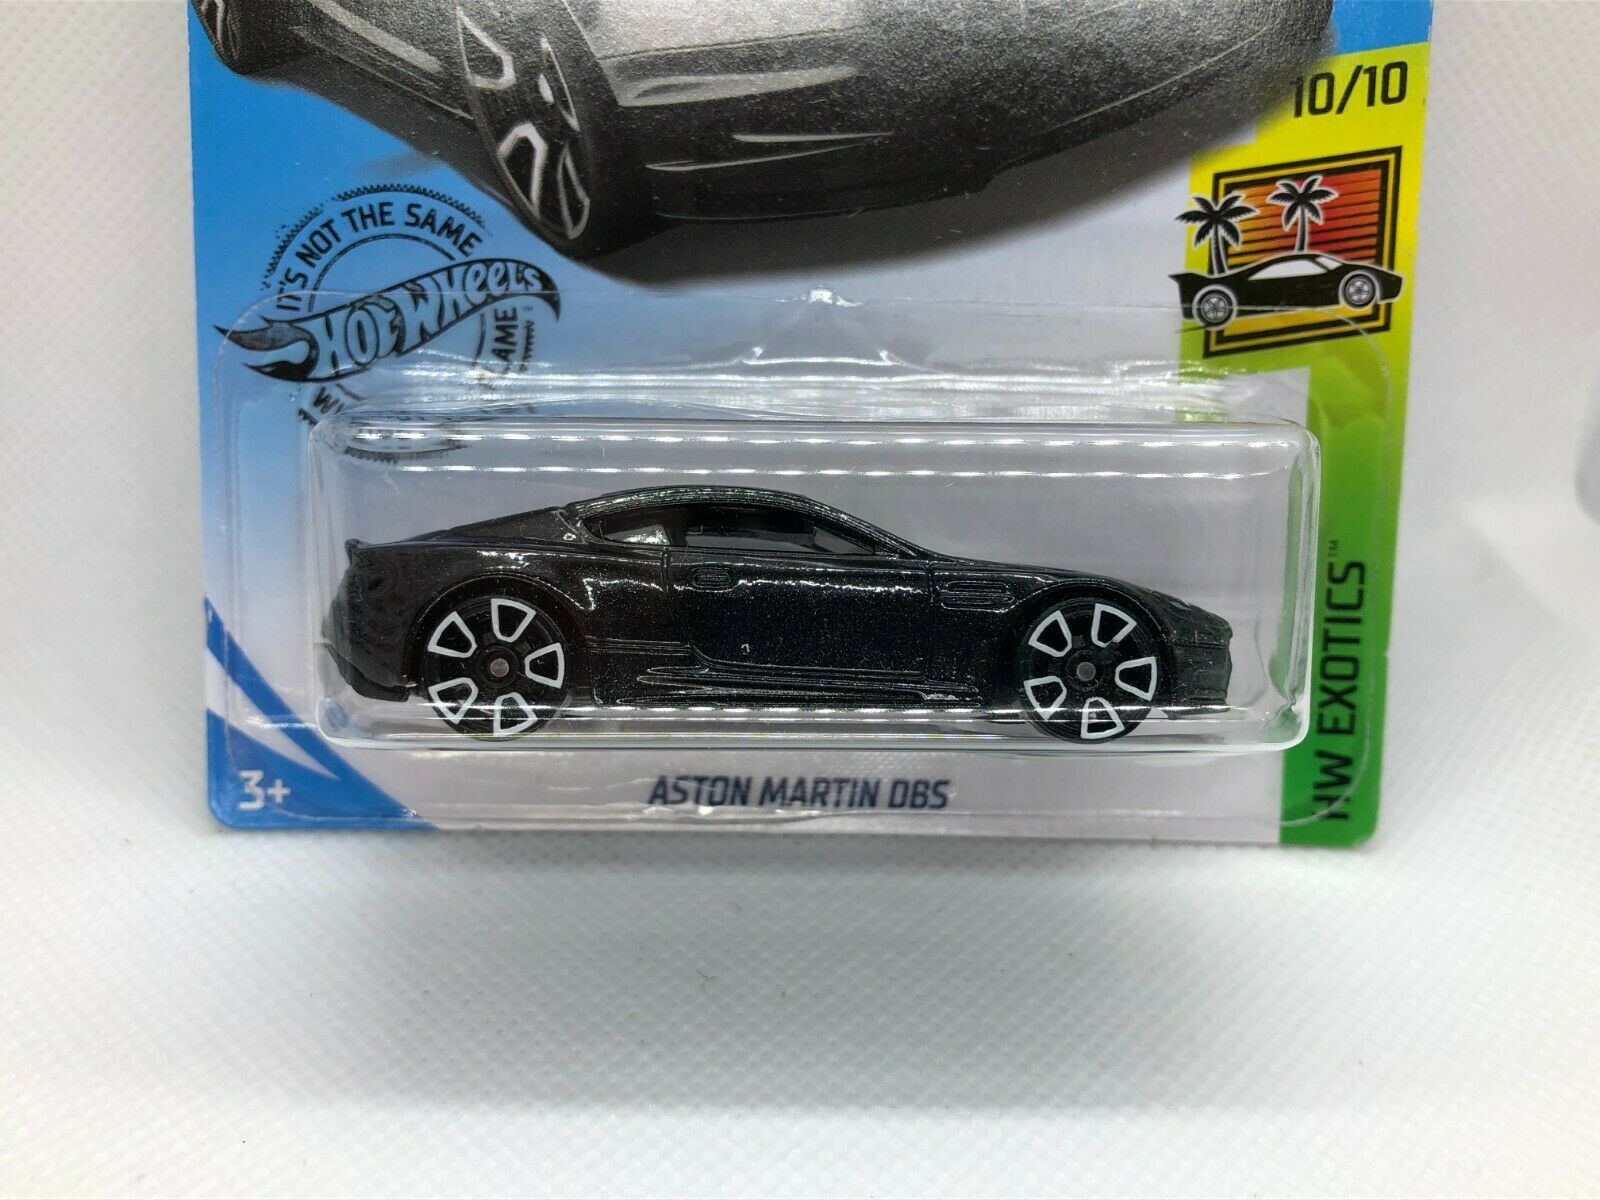 Aston Martin DBS Hot Wheels